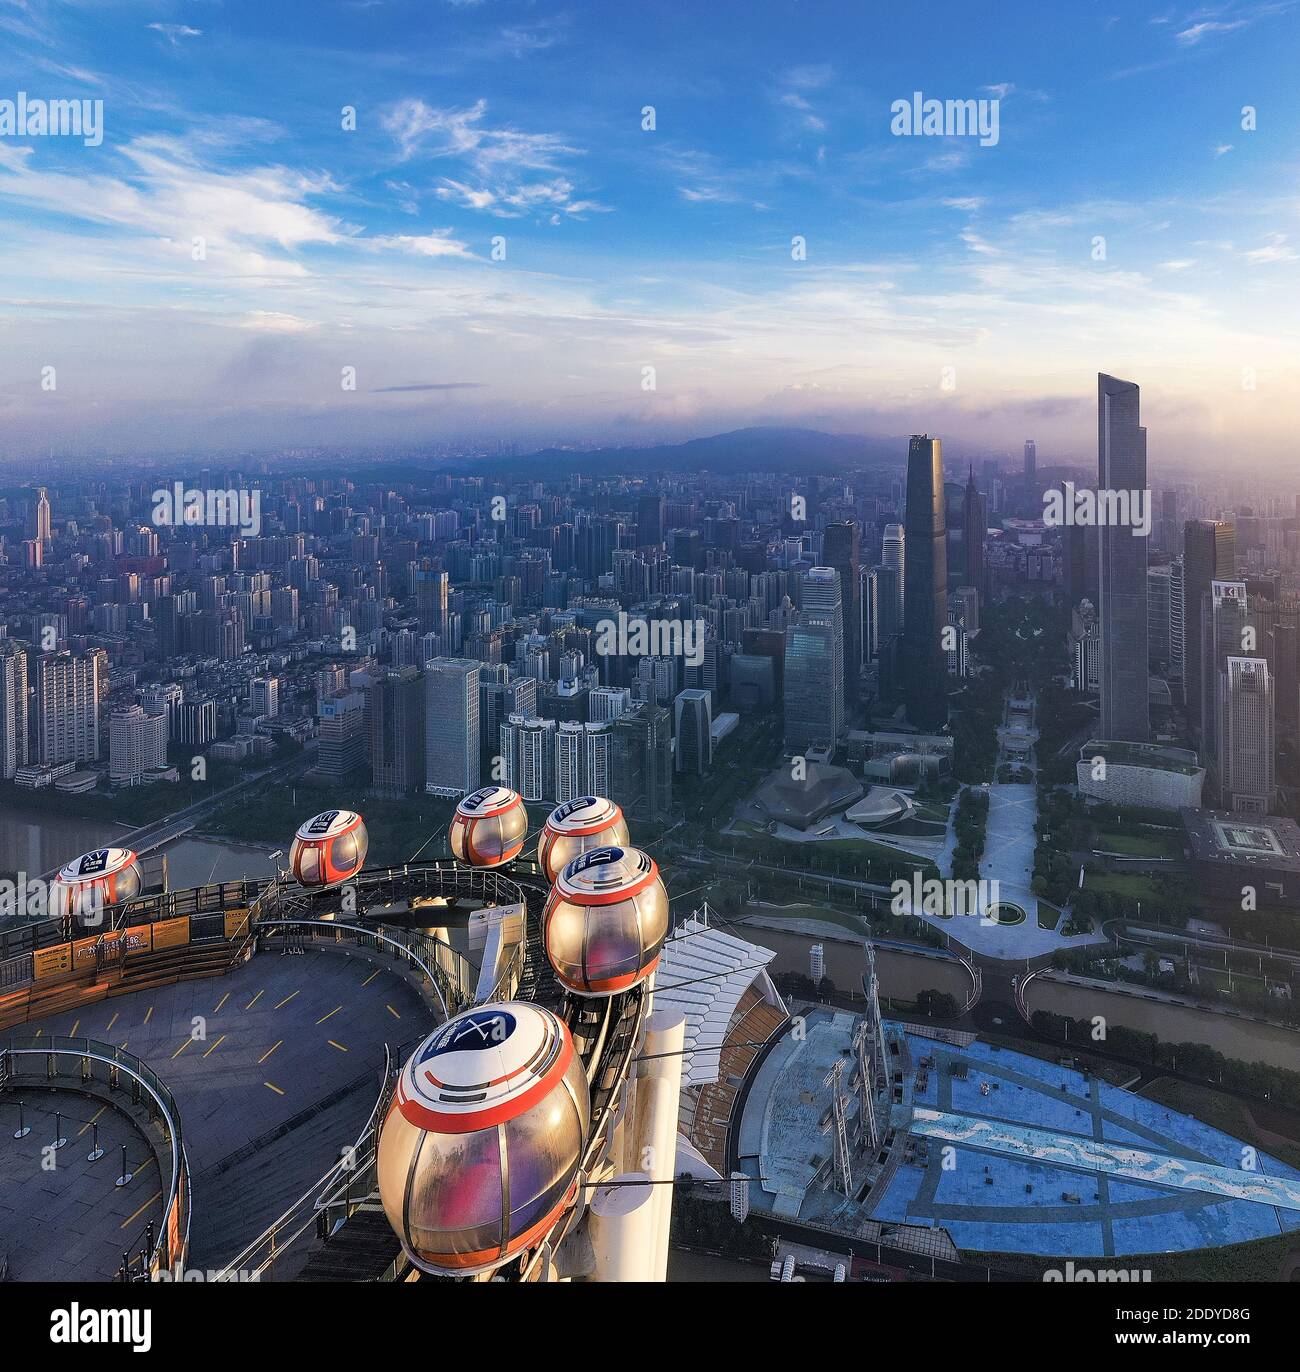 Guangzhou tower Stock Photo